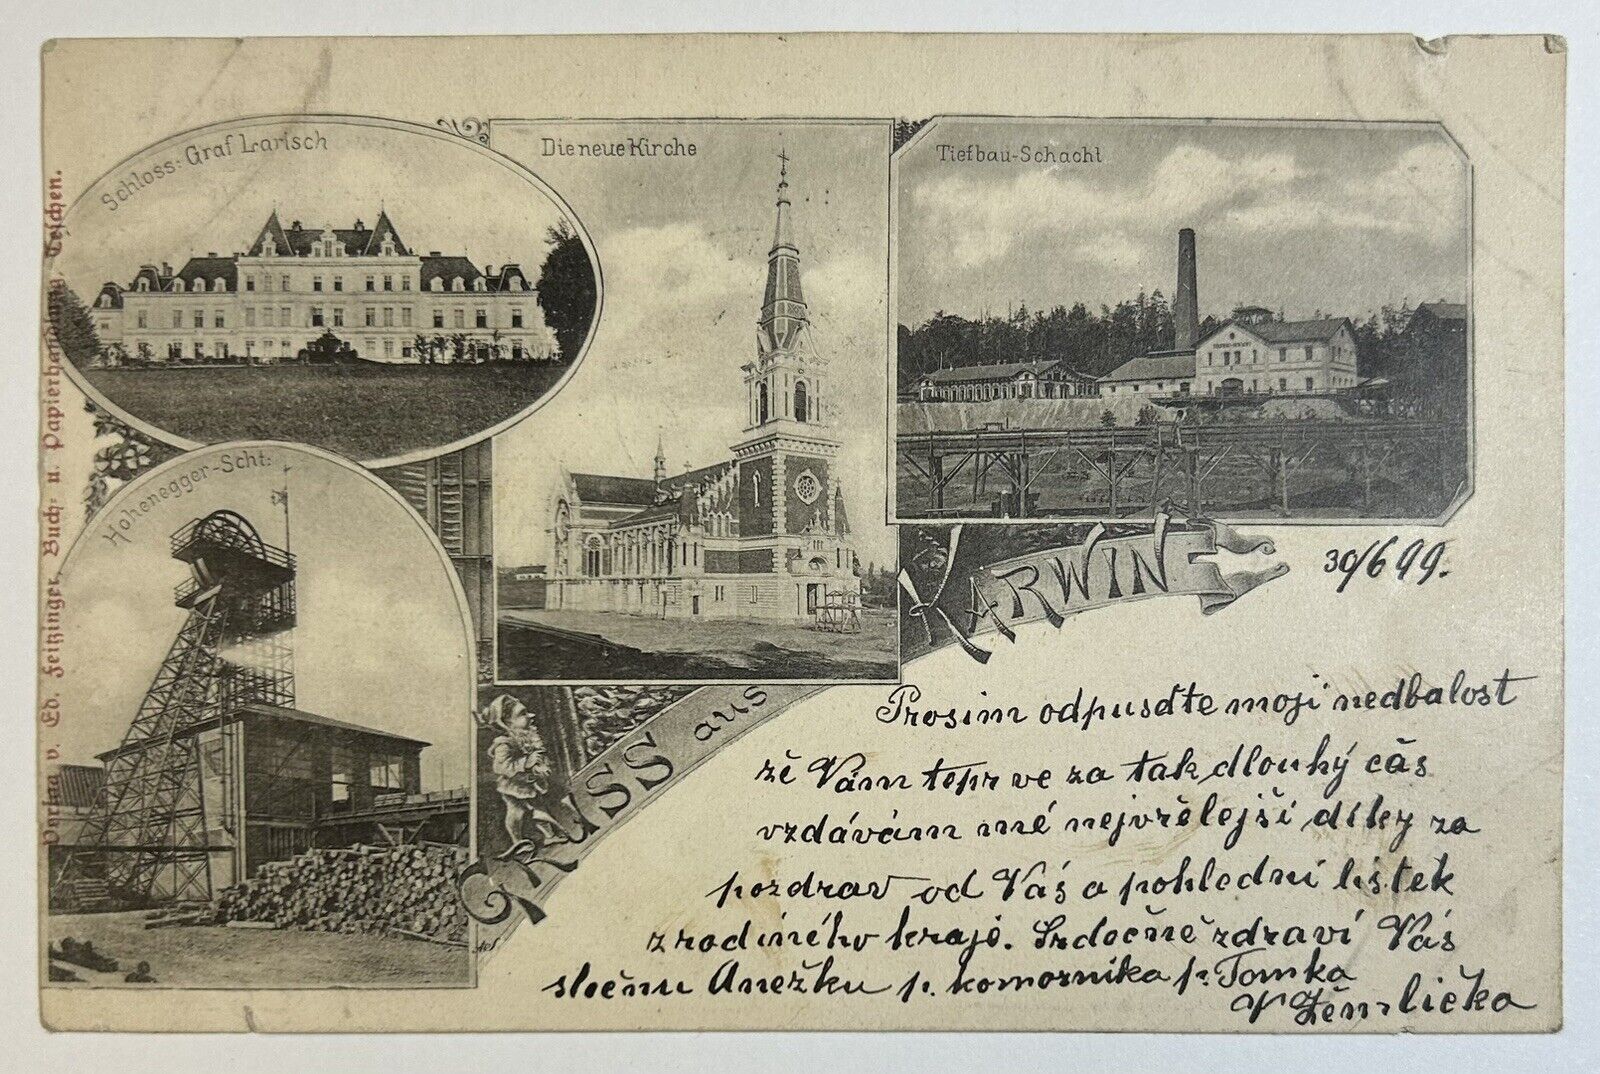 Gruss Aus Karwin Antique 1899 Postcard, Dieneue Kirche 